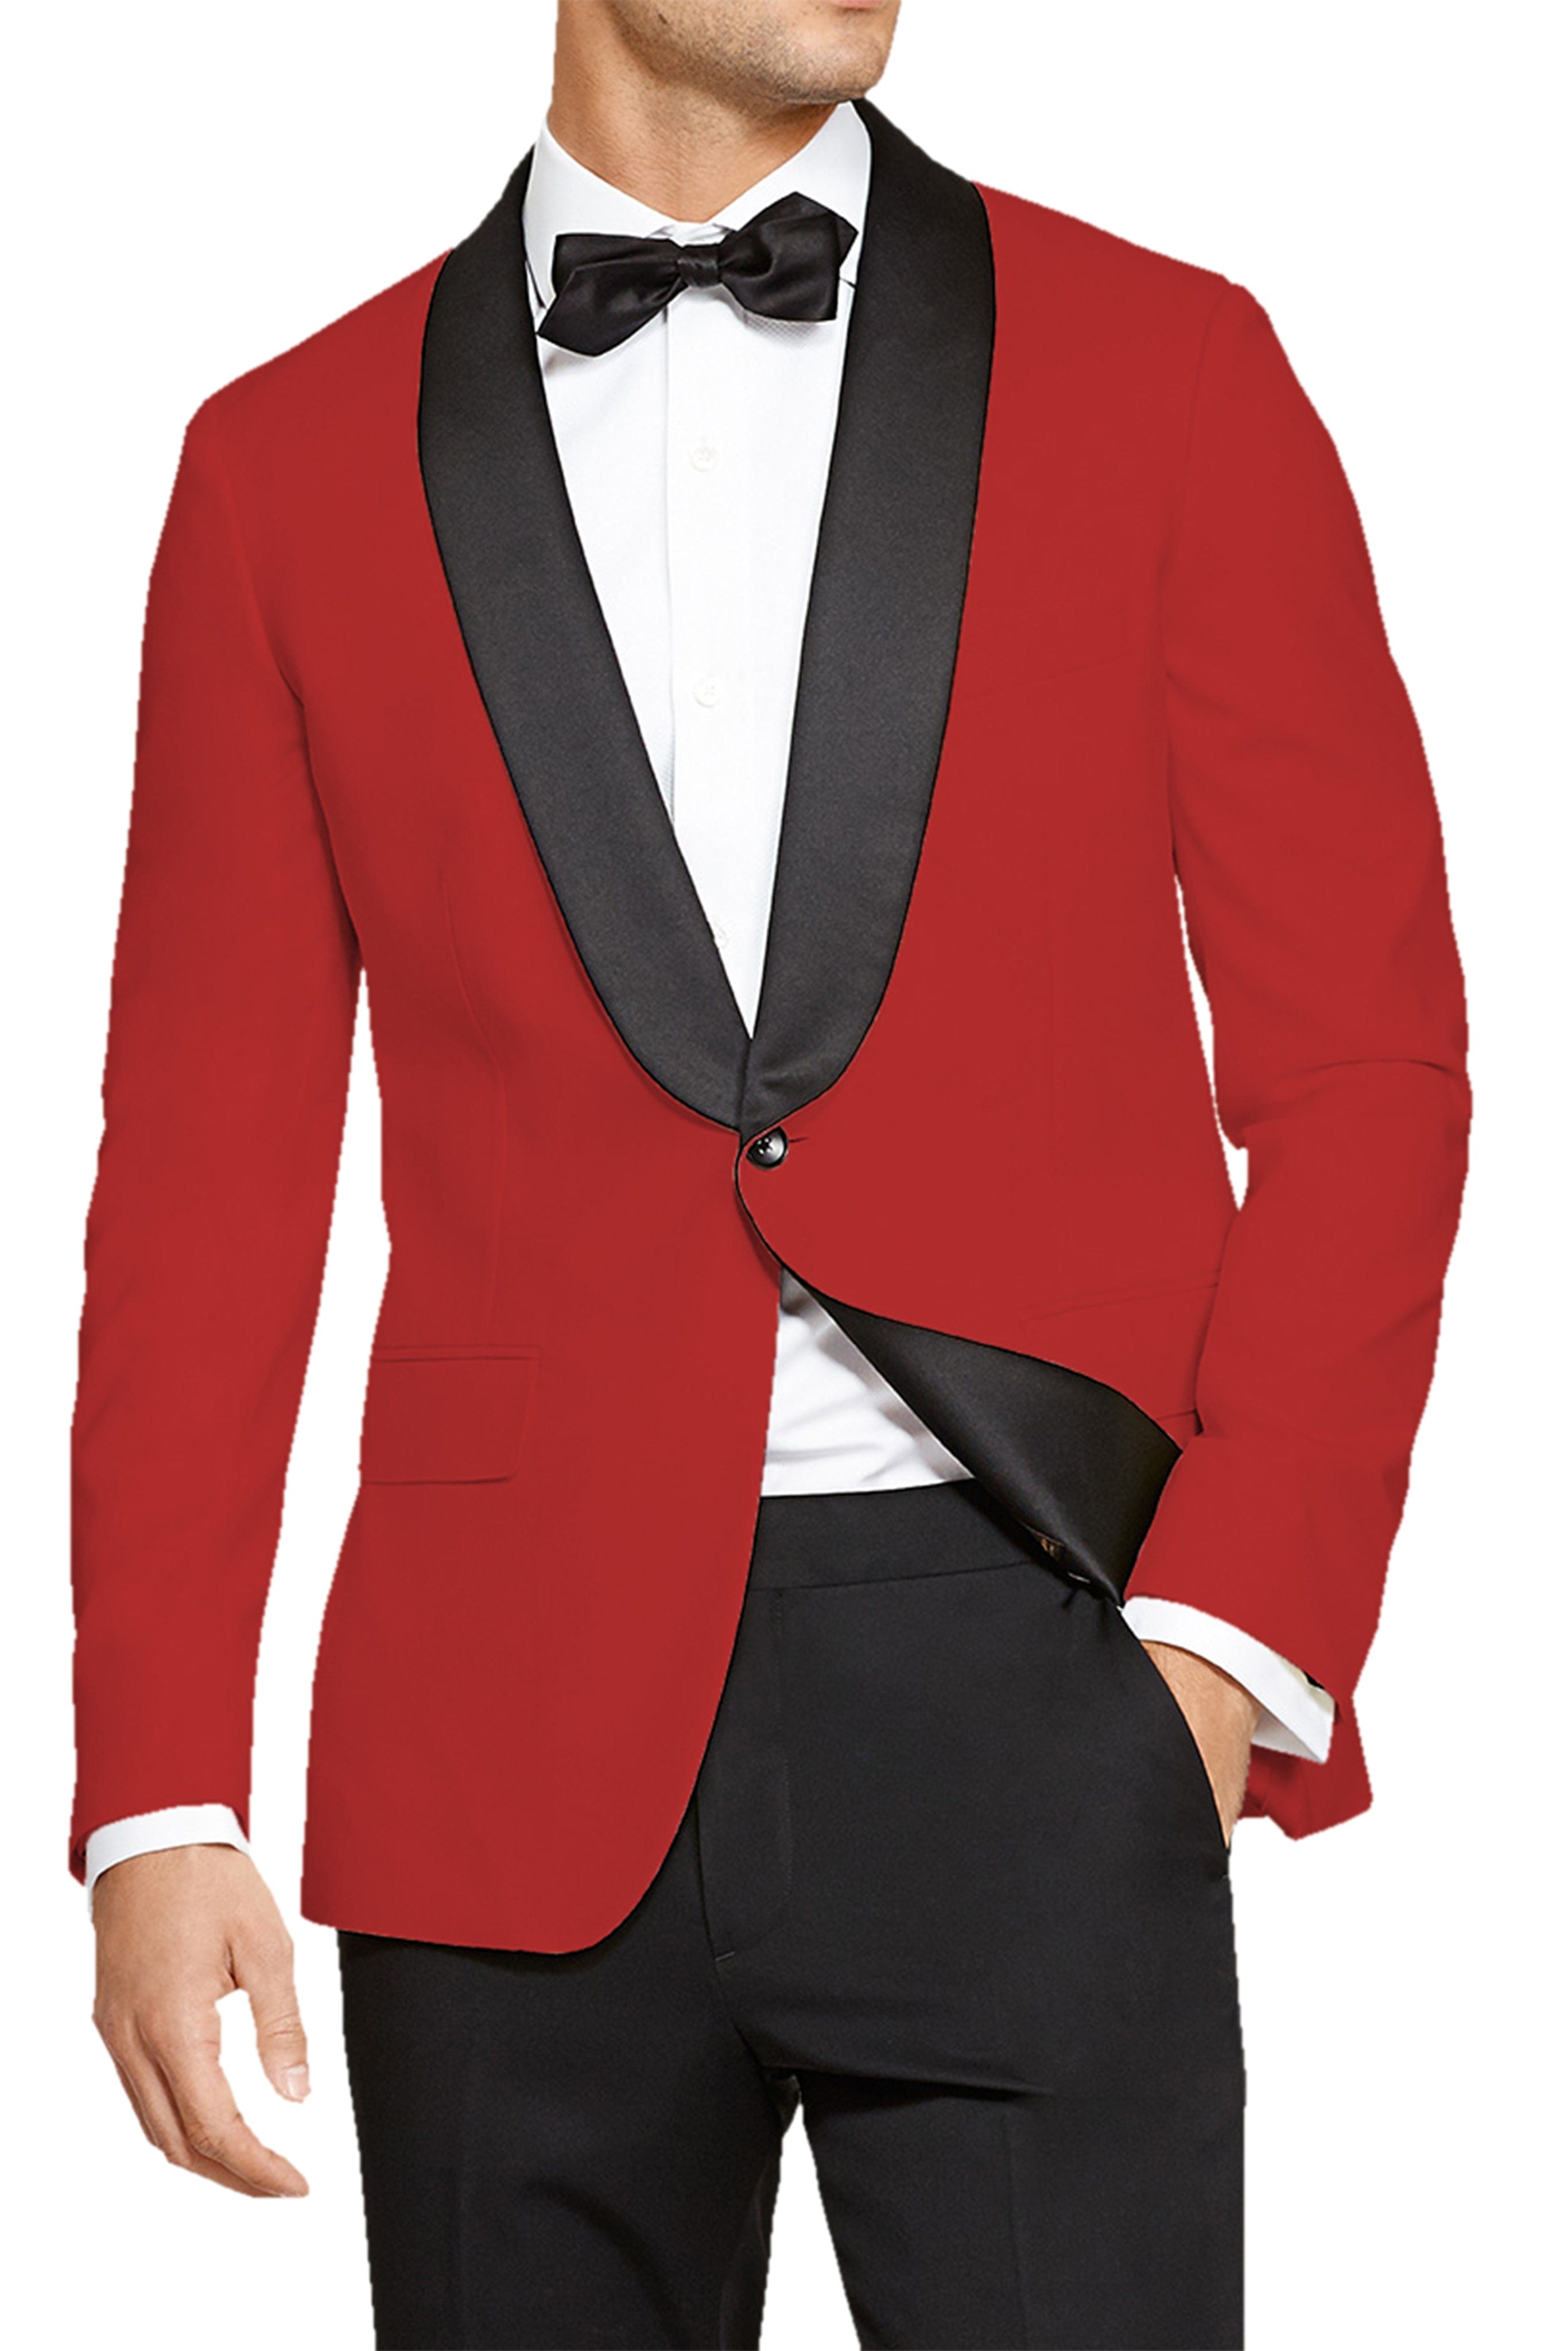 aesido 2 Pieces Fashion Shawl Lapel Men's Suit（Blazer+Pants）